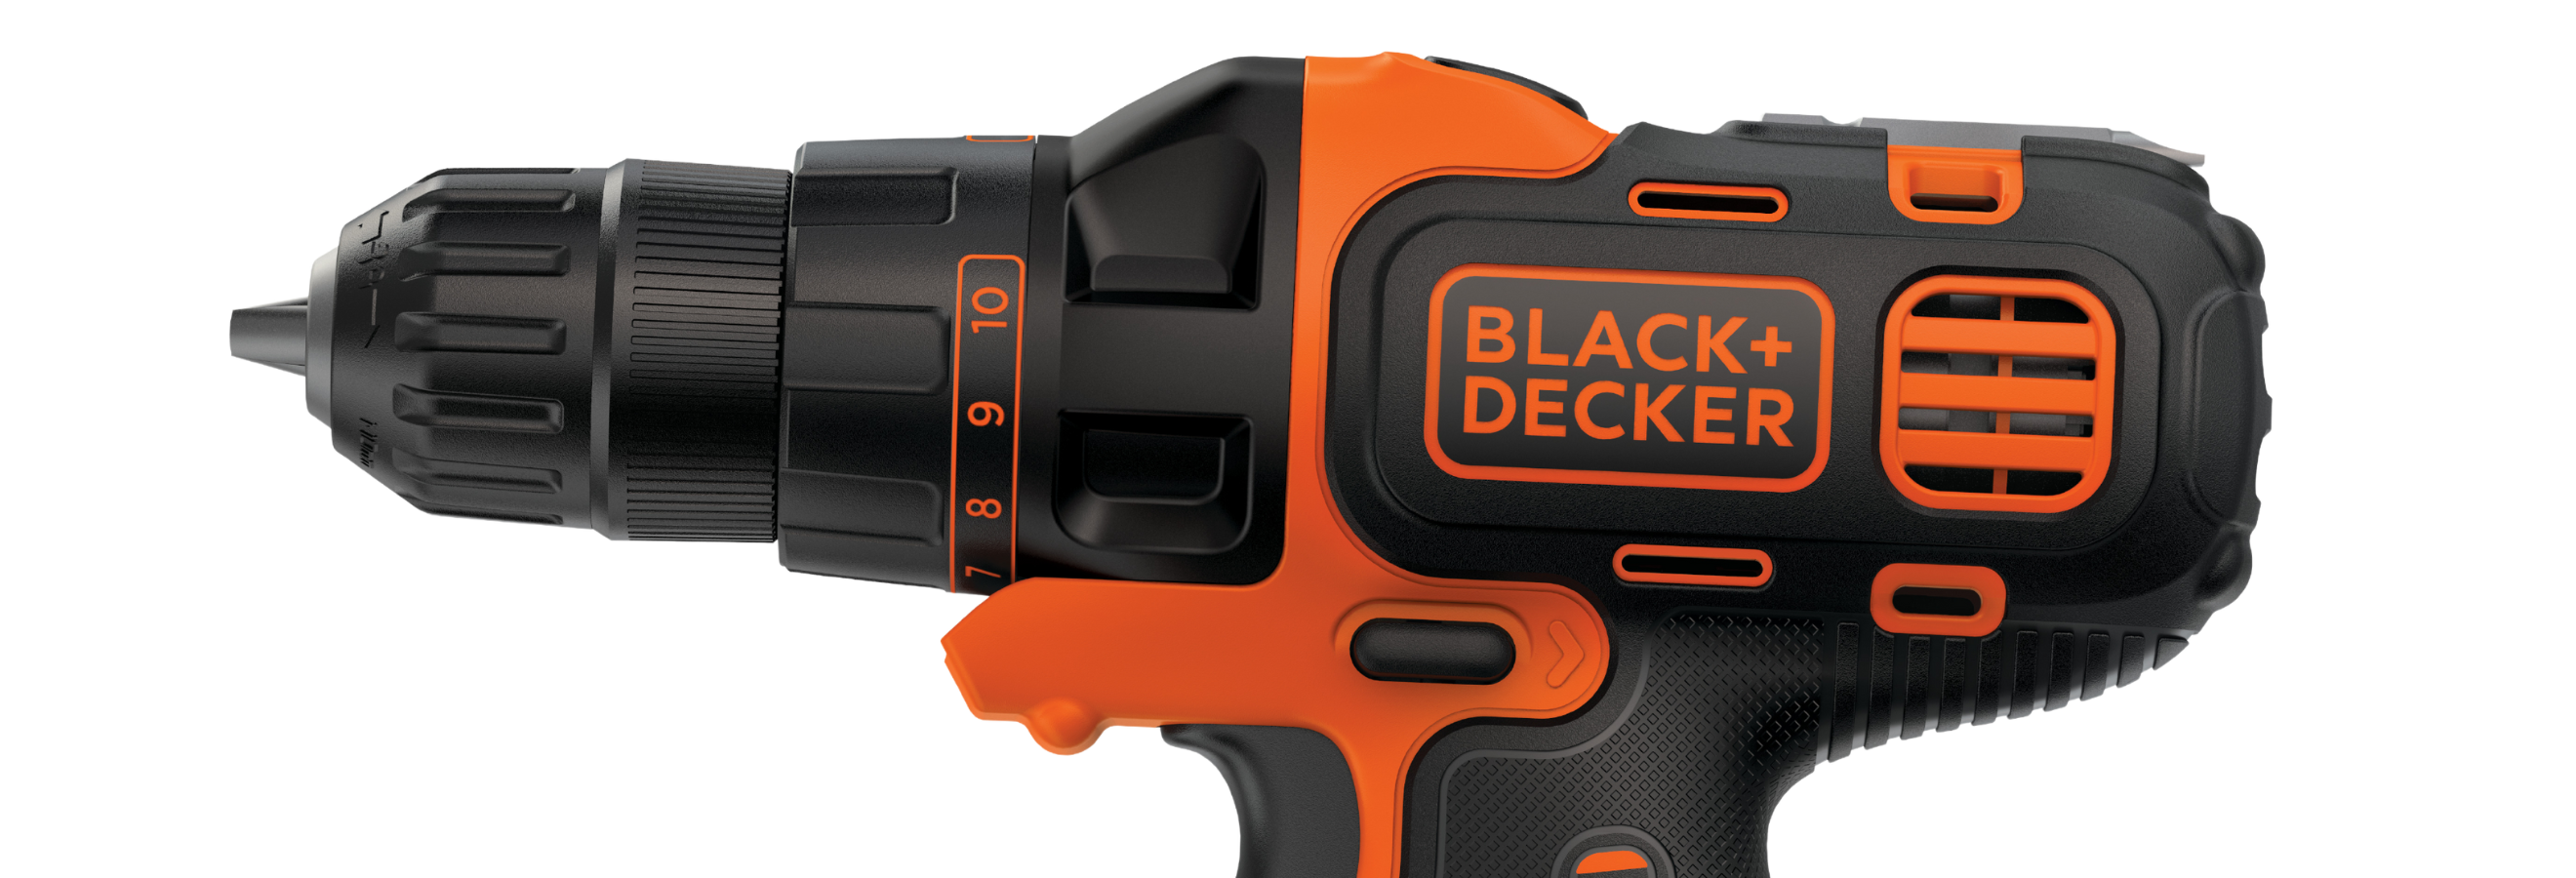  BLACK+DECKER 20V MAX Matrix Cordless Drill/Driver (BDCDMT120C)  & Matrix Attachment, Trim Saw (BDCMTTS) : Tools & Home Improvement